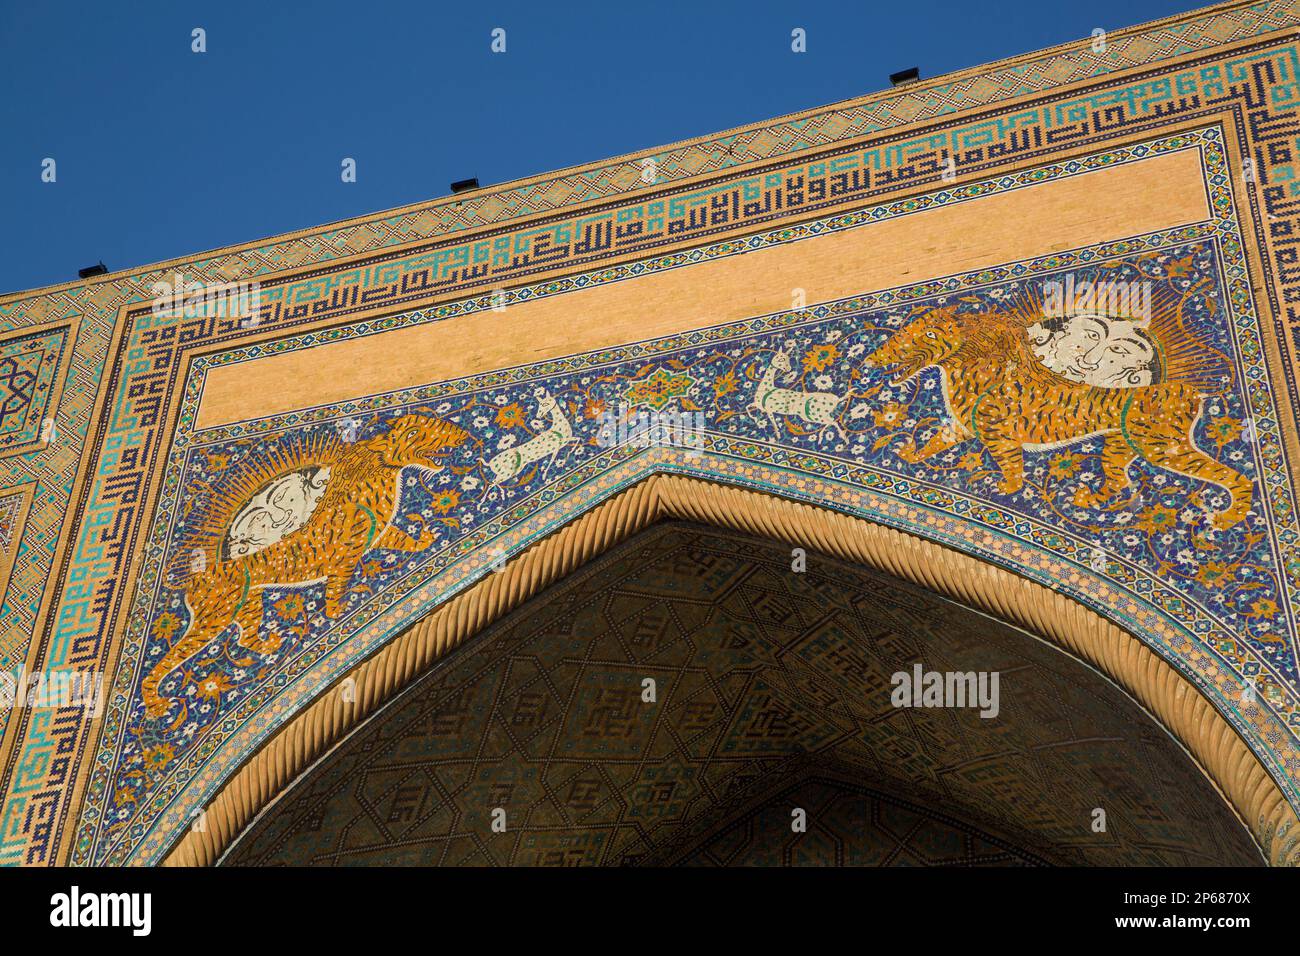 Tiger Images, Sherdor Madrassah, achevé en 1636, place du Registan, site du patrimoine mondial de l'UNESCO, Samarkand, Ouzbékistan, Asie centrale, Asie Banque D'Images